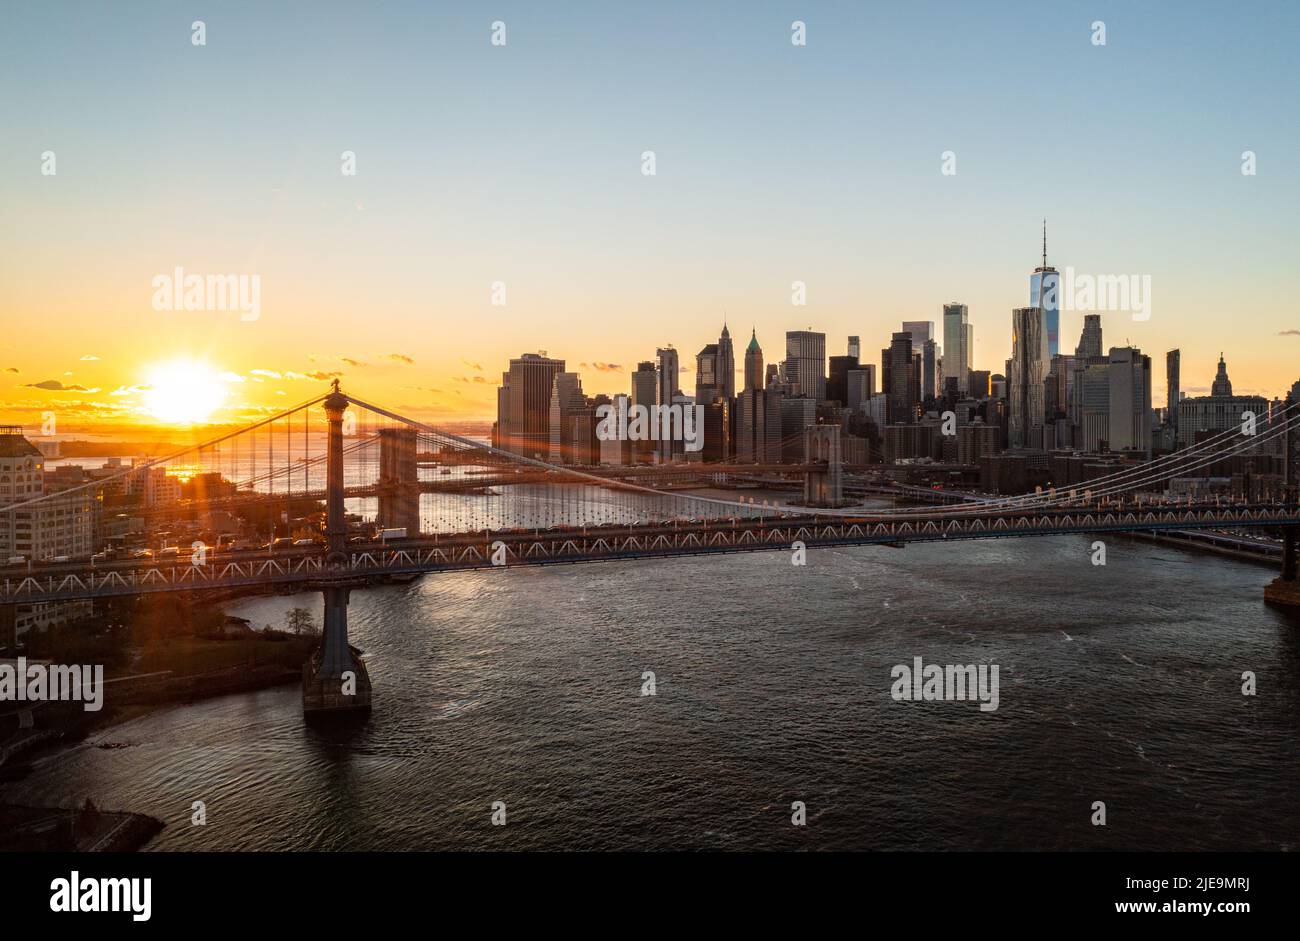 Fantastische romantische Aufnahme der Manhattan Bridge und der Wolkenkratzer von Manhattan vor Sonnenuntergang. Manhattan, New York City, USA Stockfoto